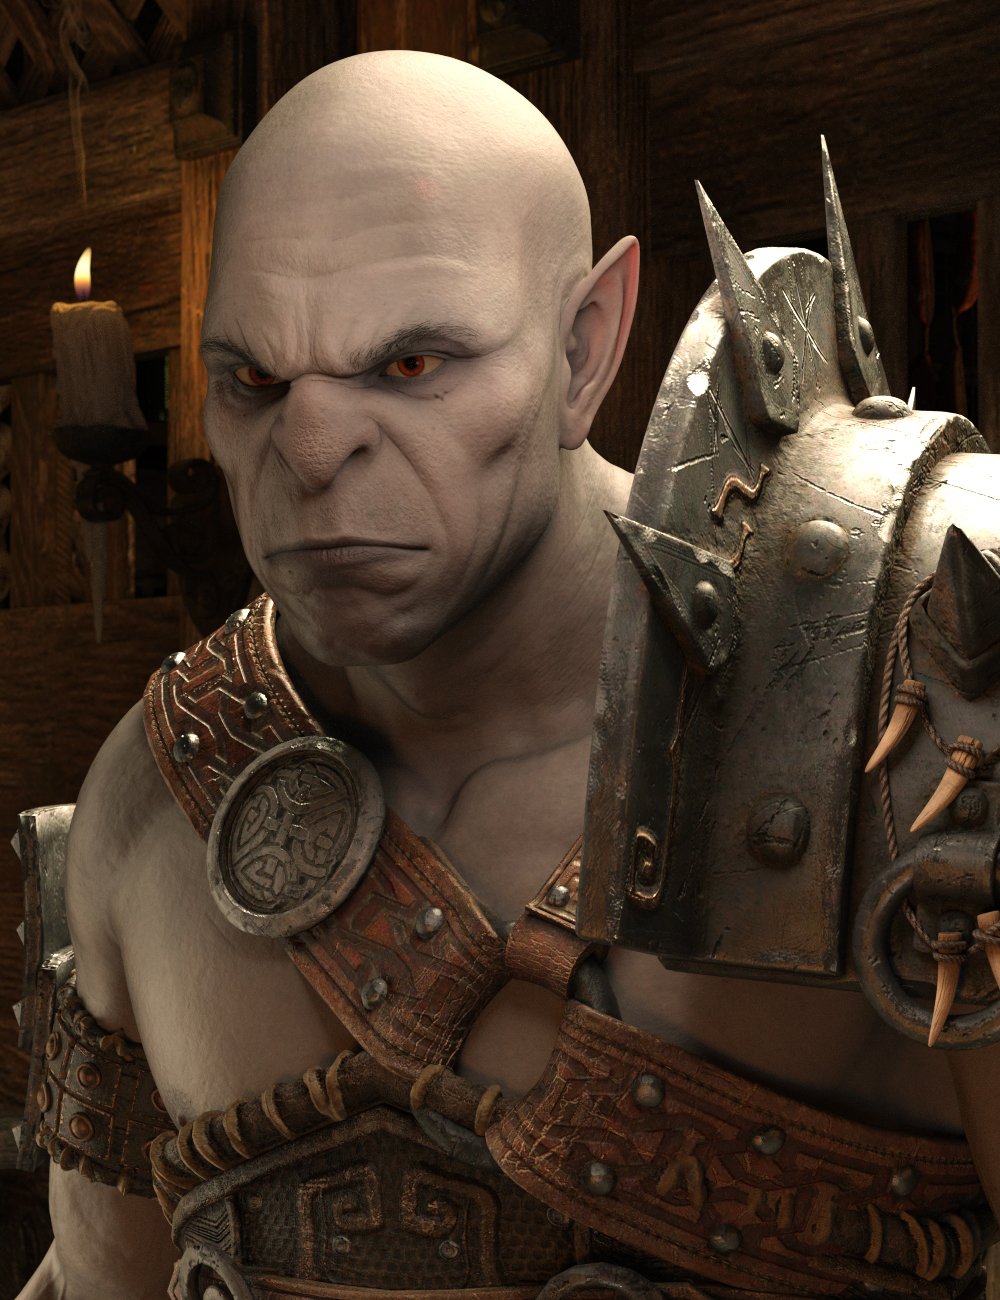 Orc Horde HD for Genesis 8.1 Male by: GhostofMacbeth, 3D Models by Daz 3D